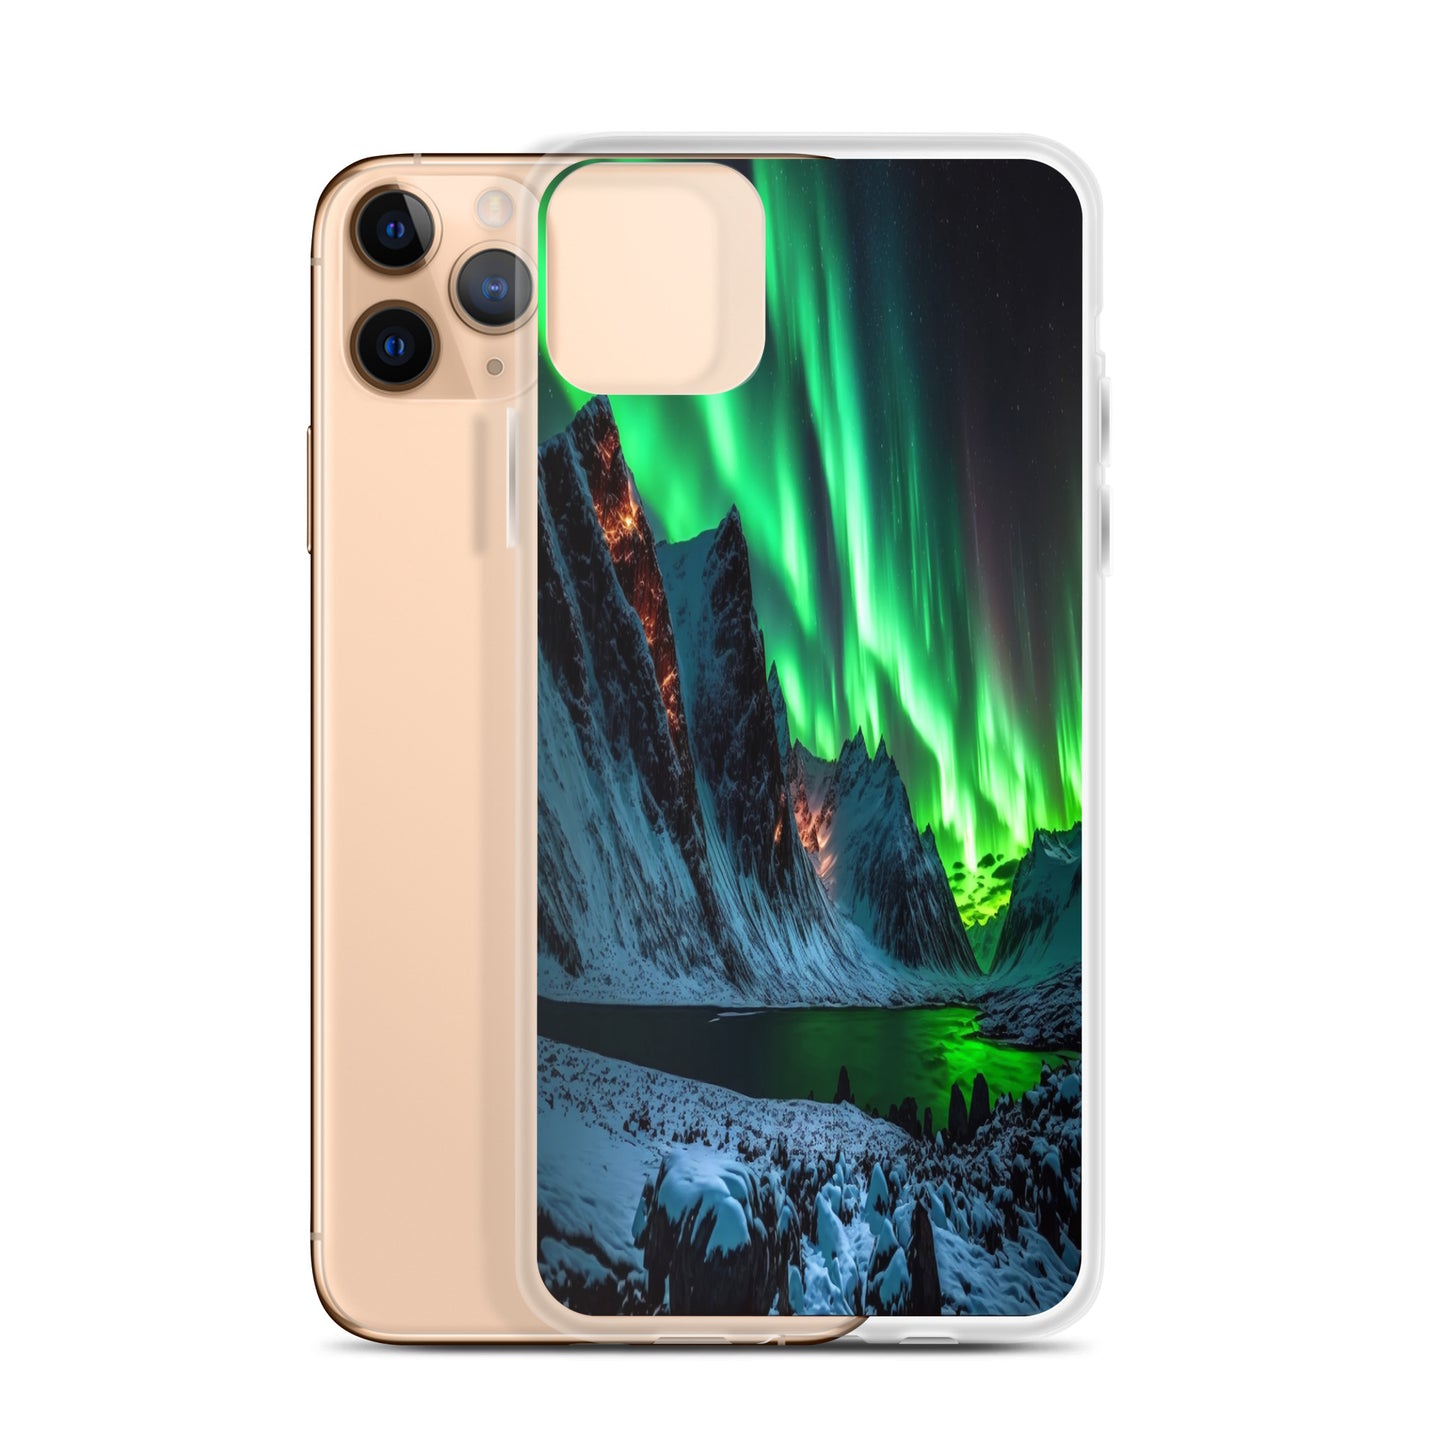 Unique Aurora Borealis iPhone Cover Case - Northern Light Phone Cover Case - Clear Case for iPhone - Perfect Aurora Lovers Gift 7